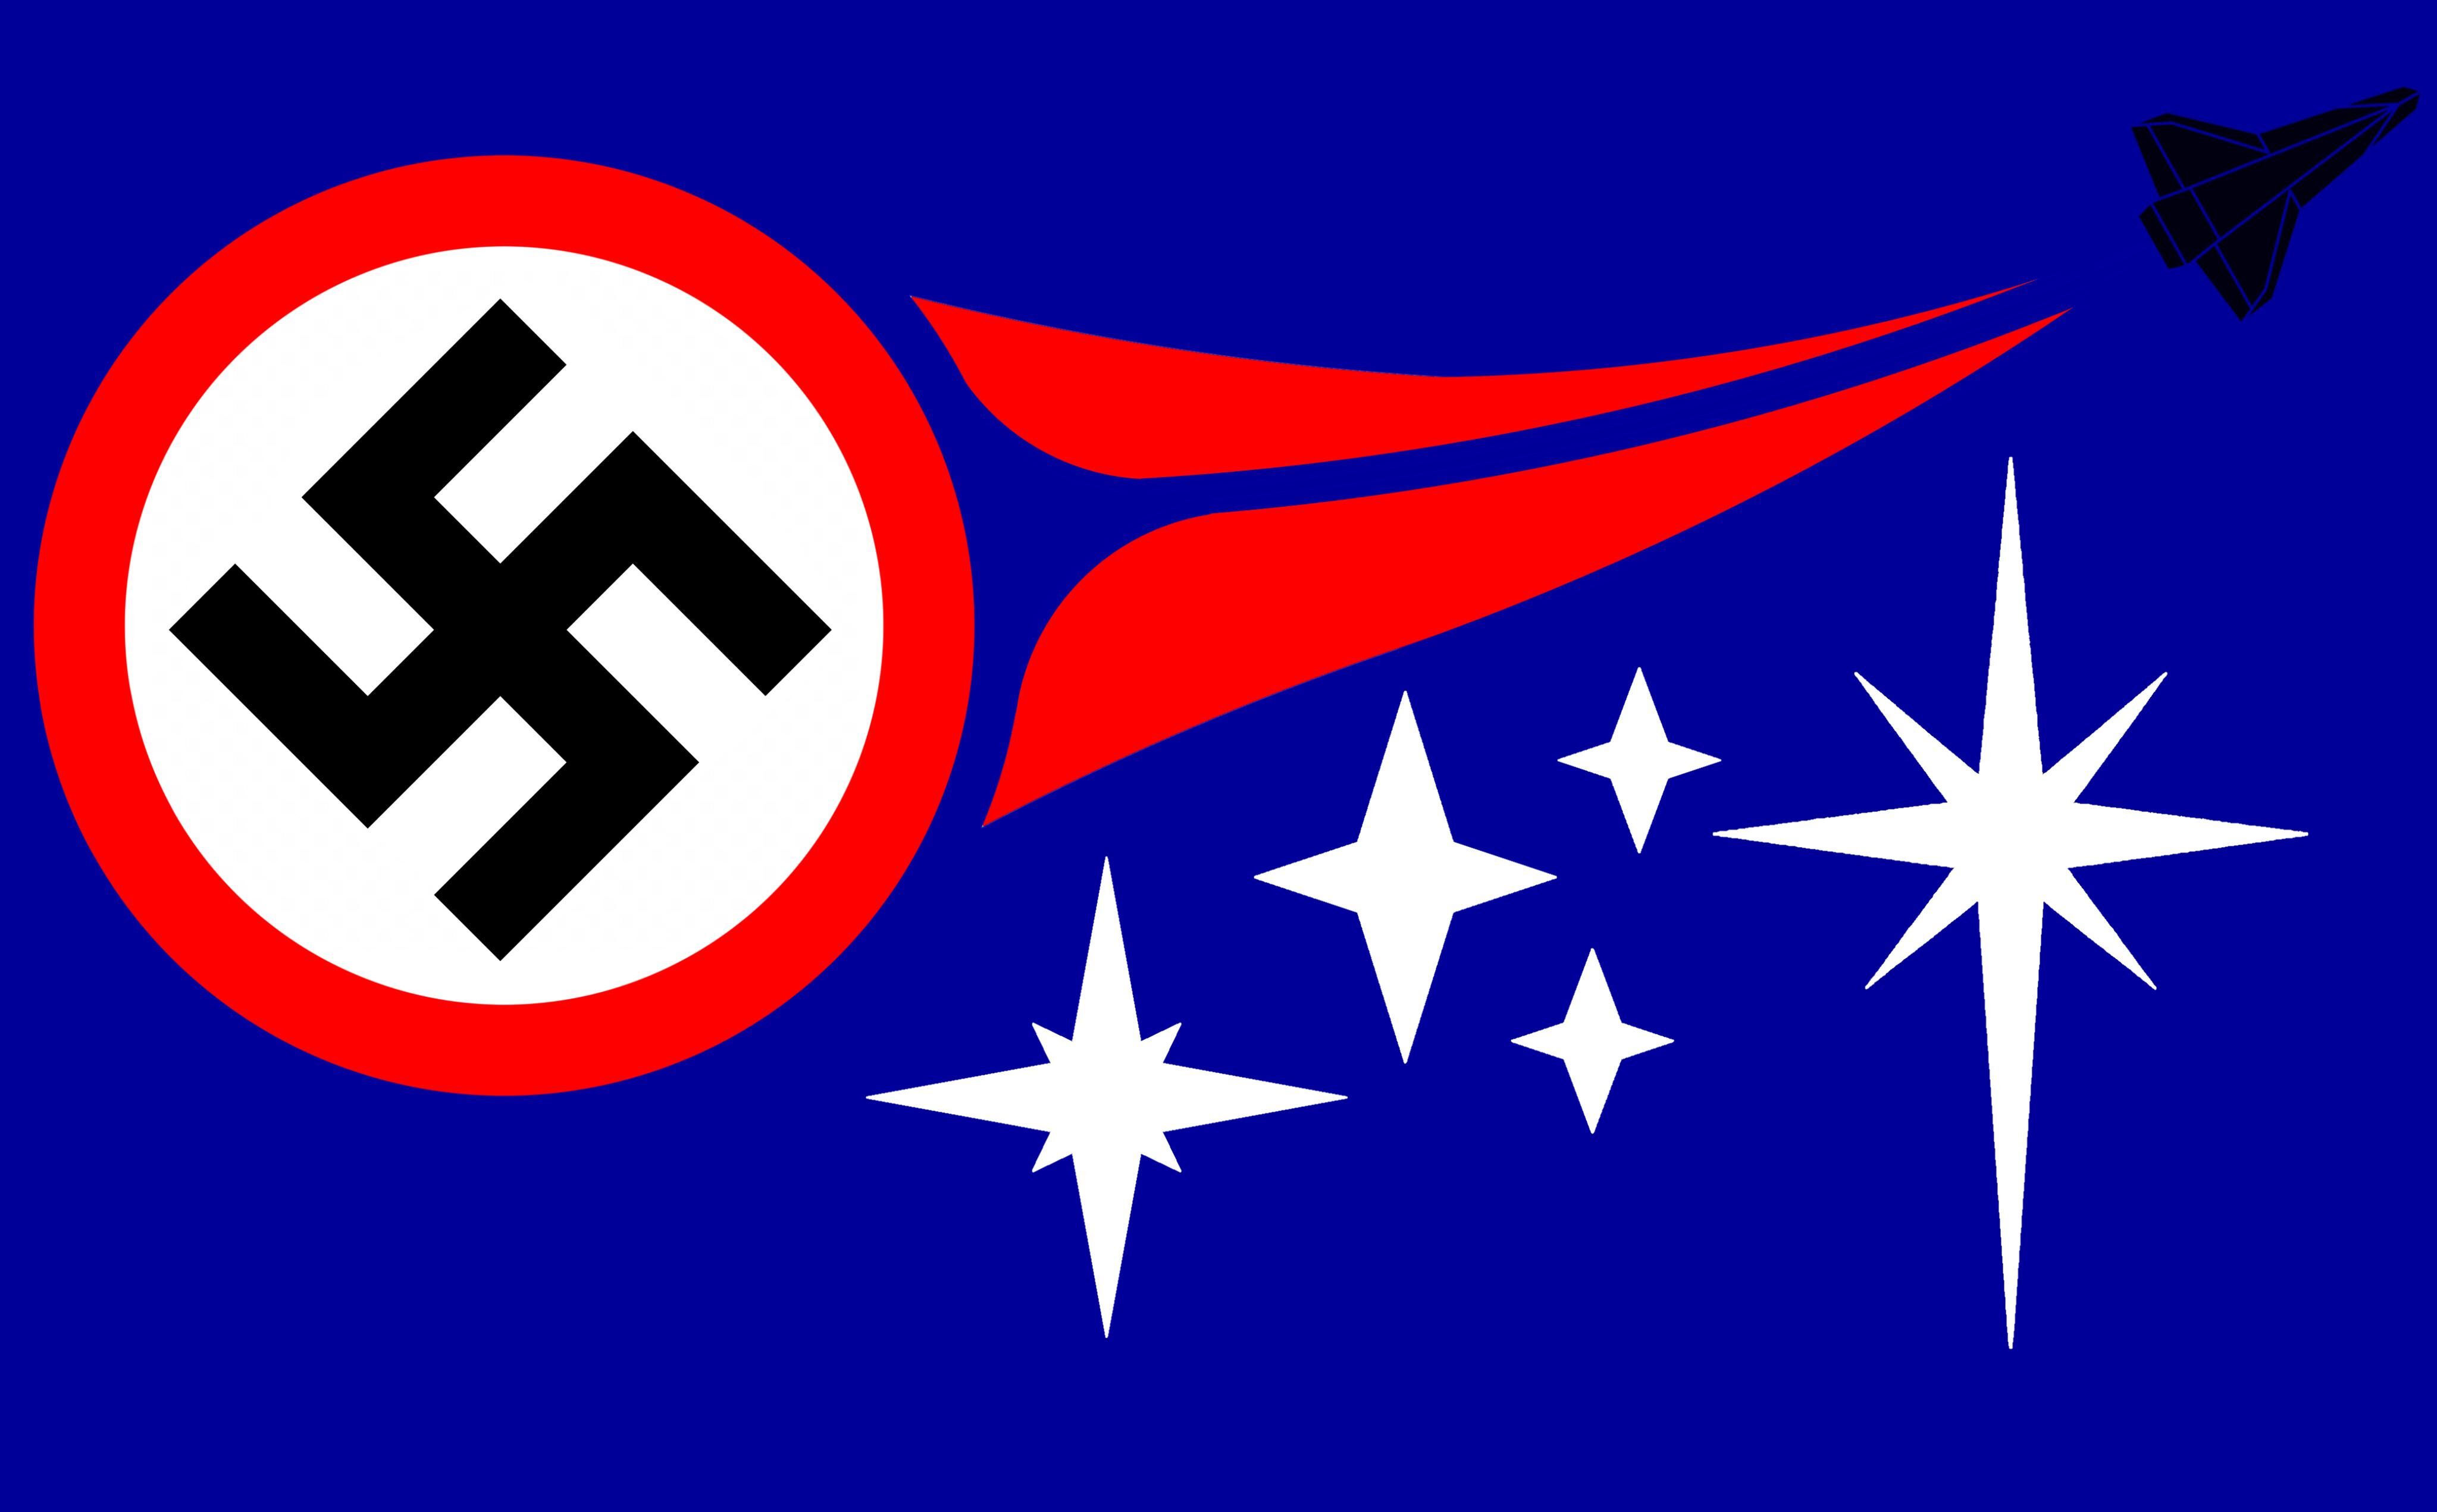 Nazi NATO